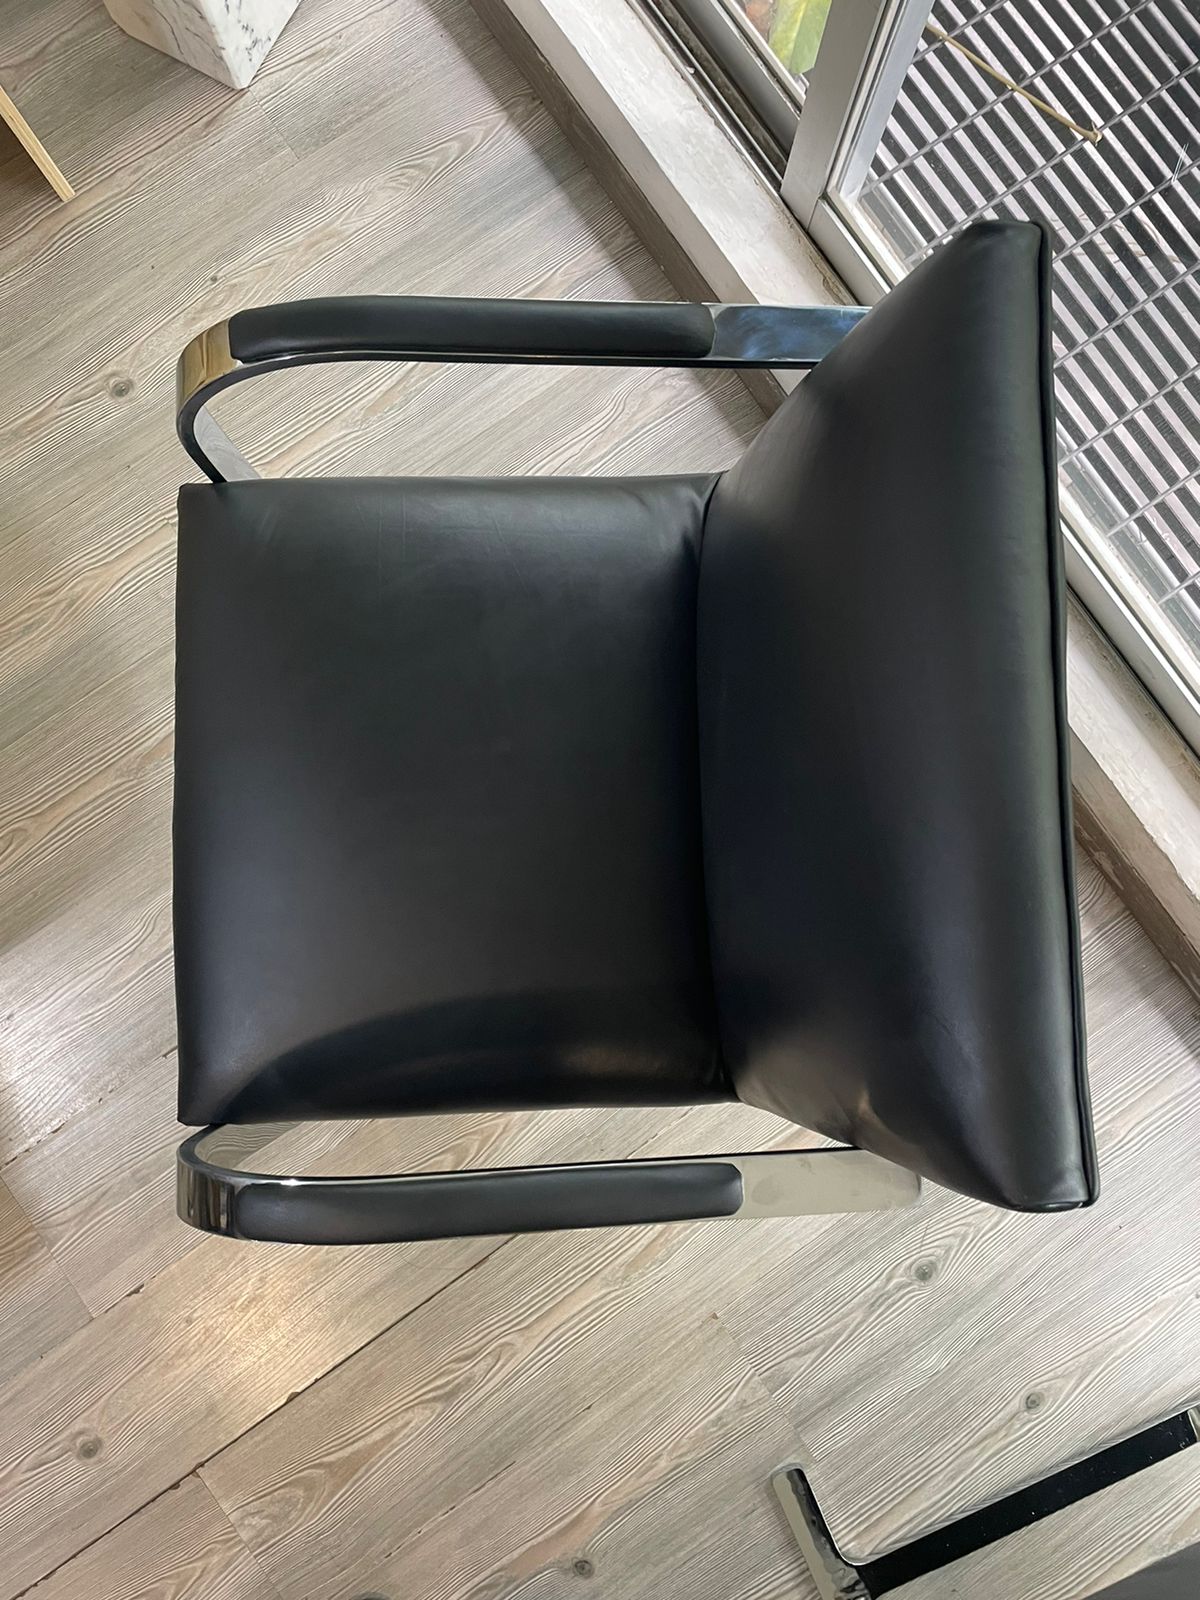 Brno Chair      Replica